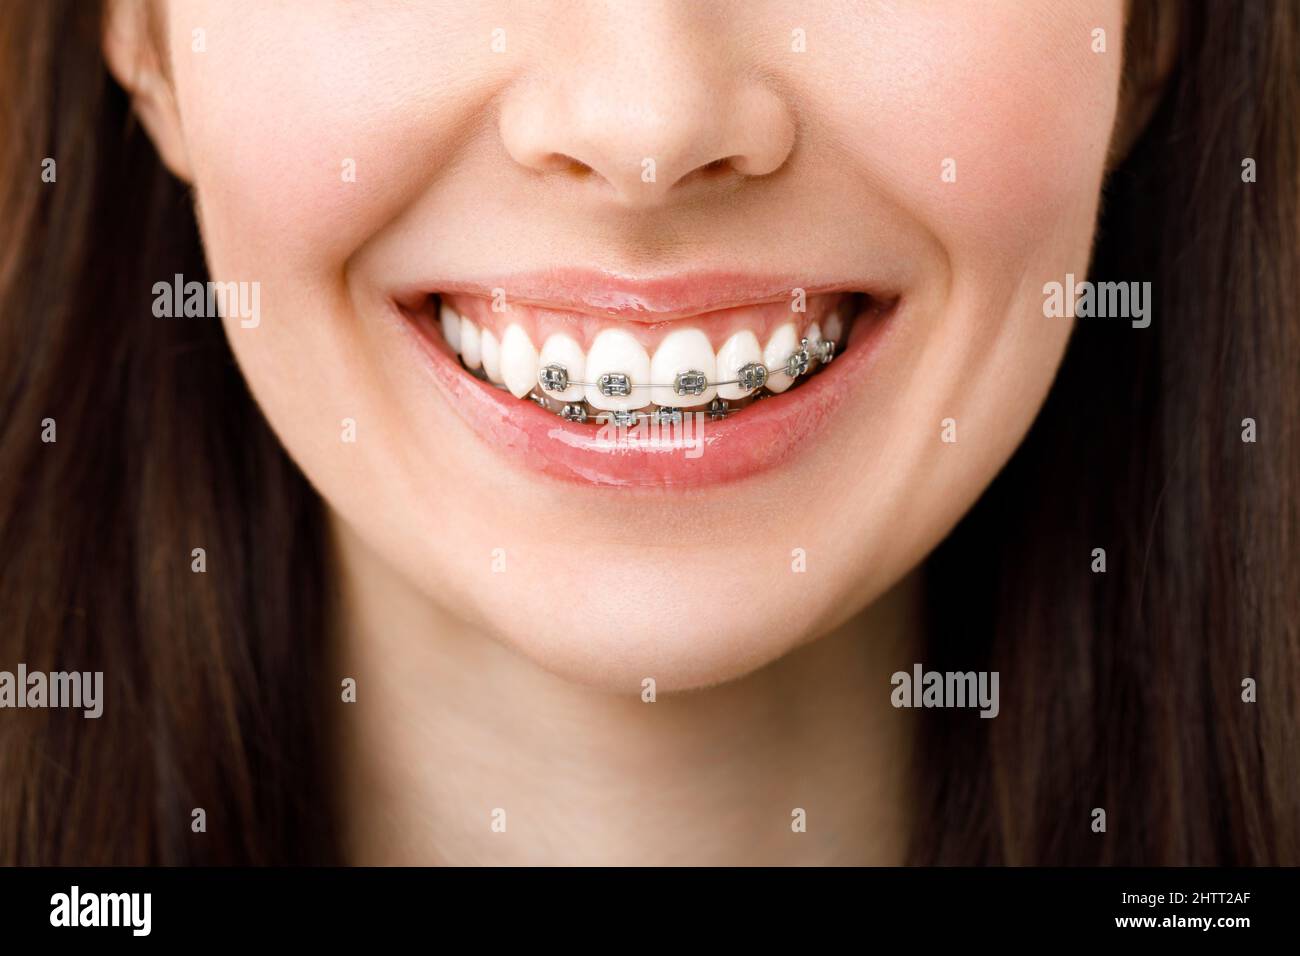 Trattamento ortodontico. Concetto di cura dentale. Bella donna sorriso sano primo piano. Primo piano staffe in ceramica e metallo sui denti. Bellissimo sorriso. Foto Stock